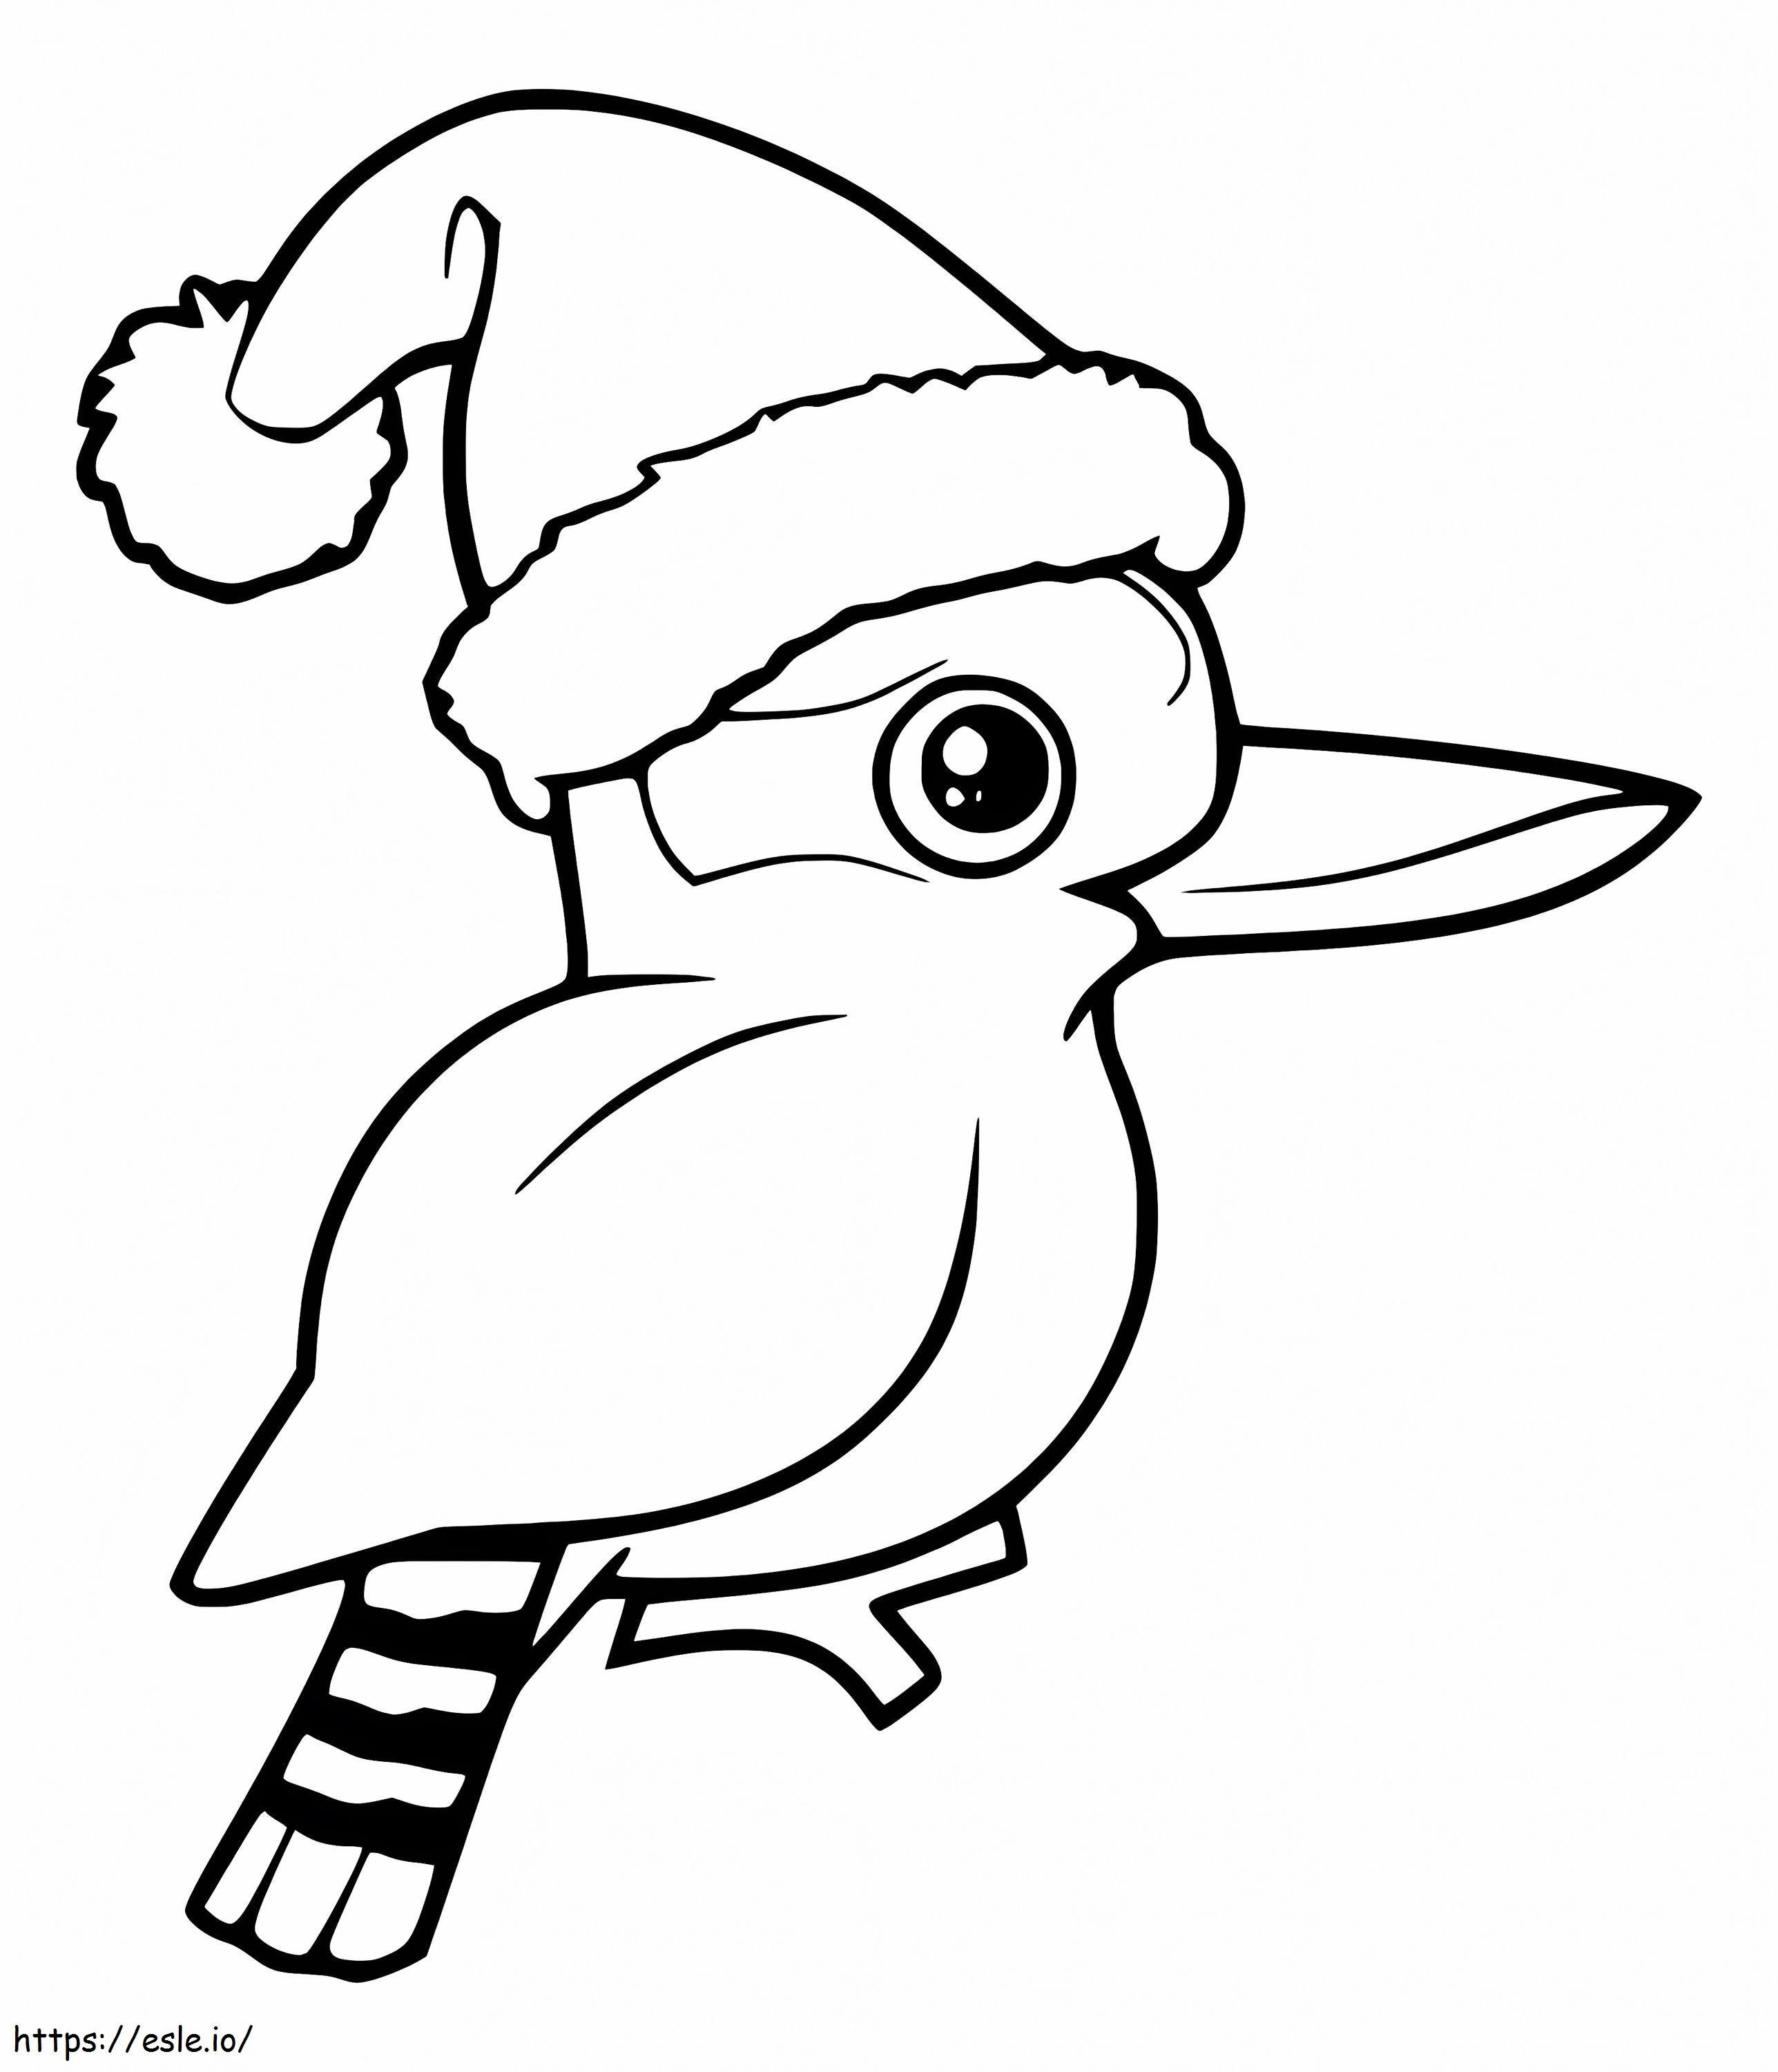 Weihnachts-Kookaburra ausmalbilder